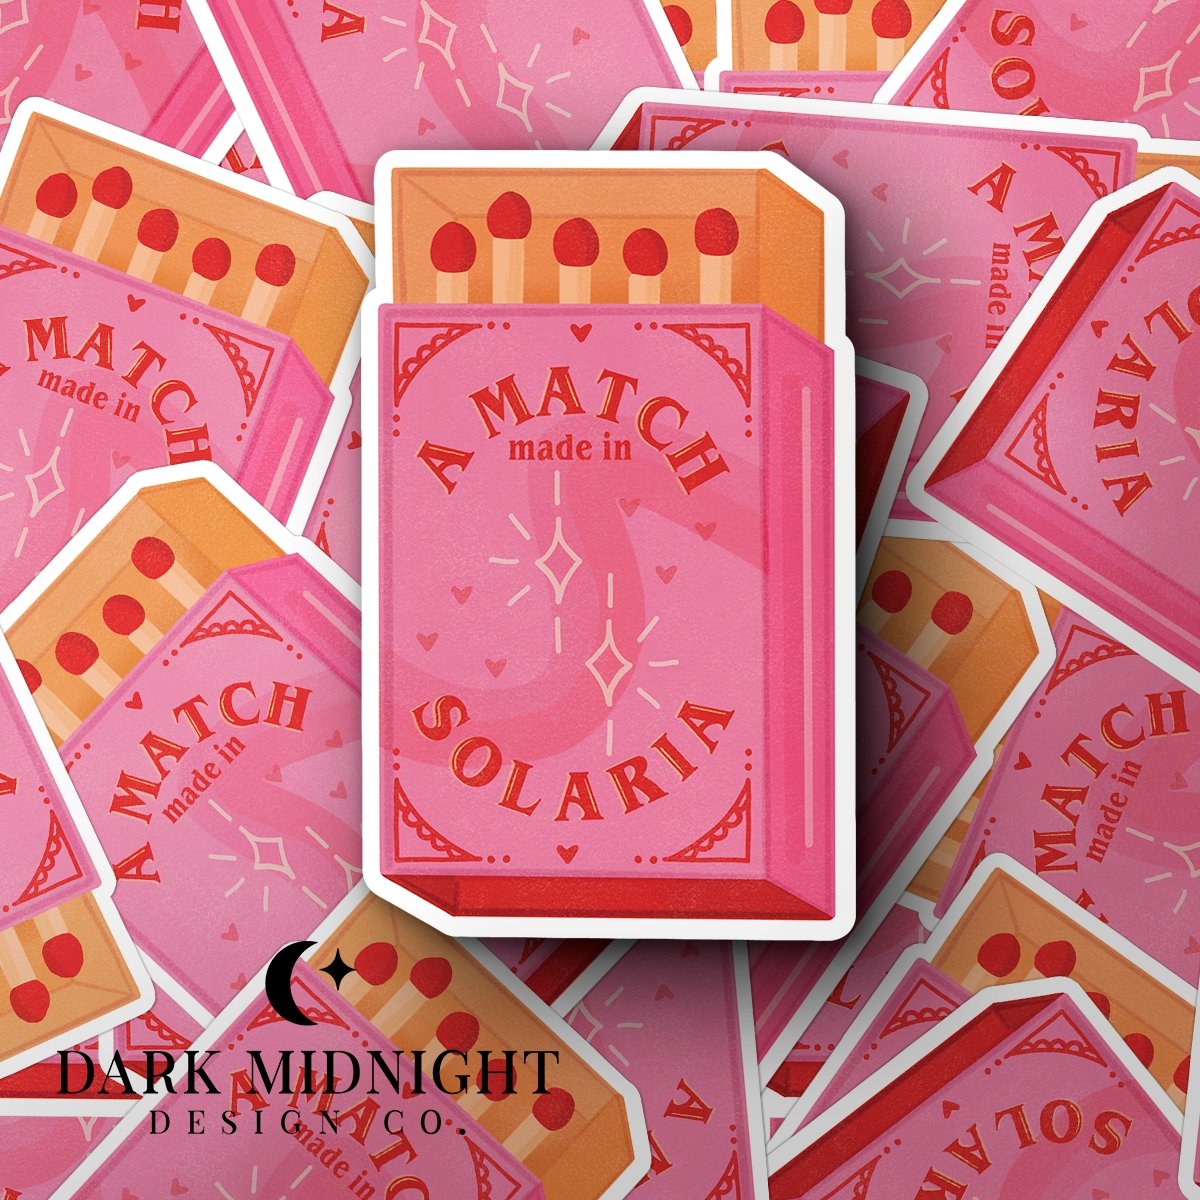 Match Made in Solaria Matchbox - Officially Licensed Zodiac Academy Sticker - Dark Midnight Design Co